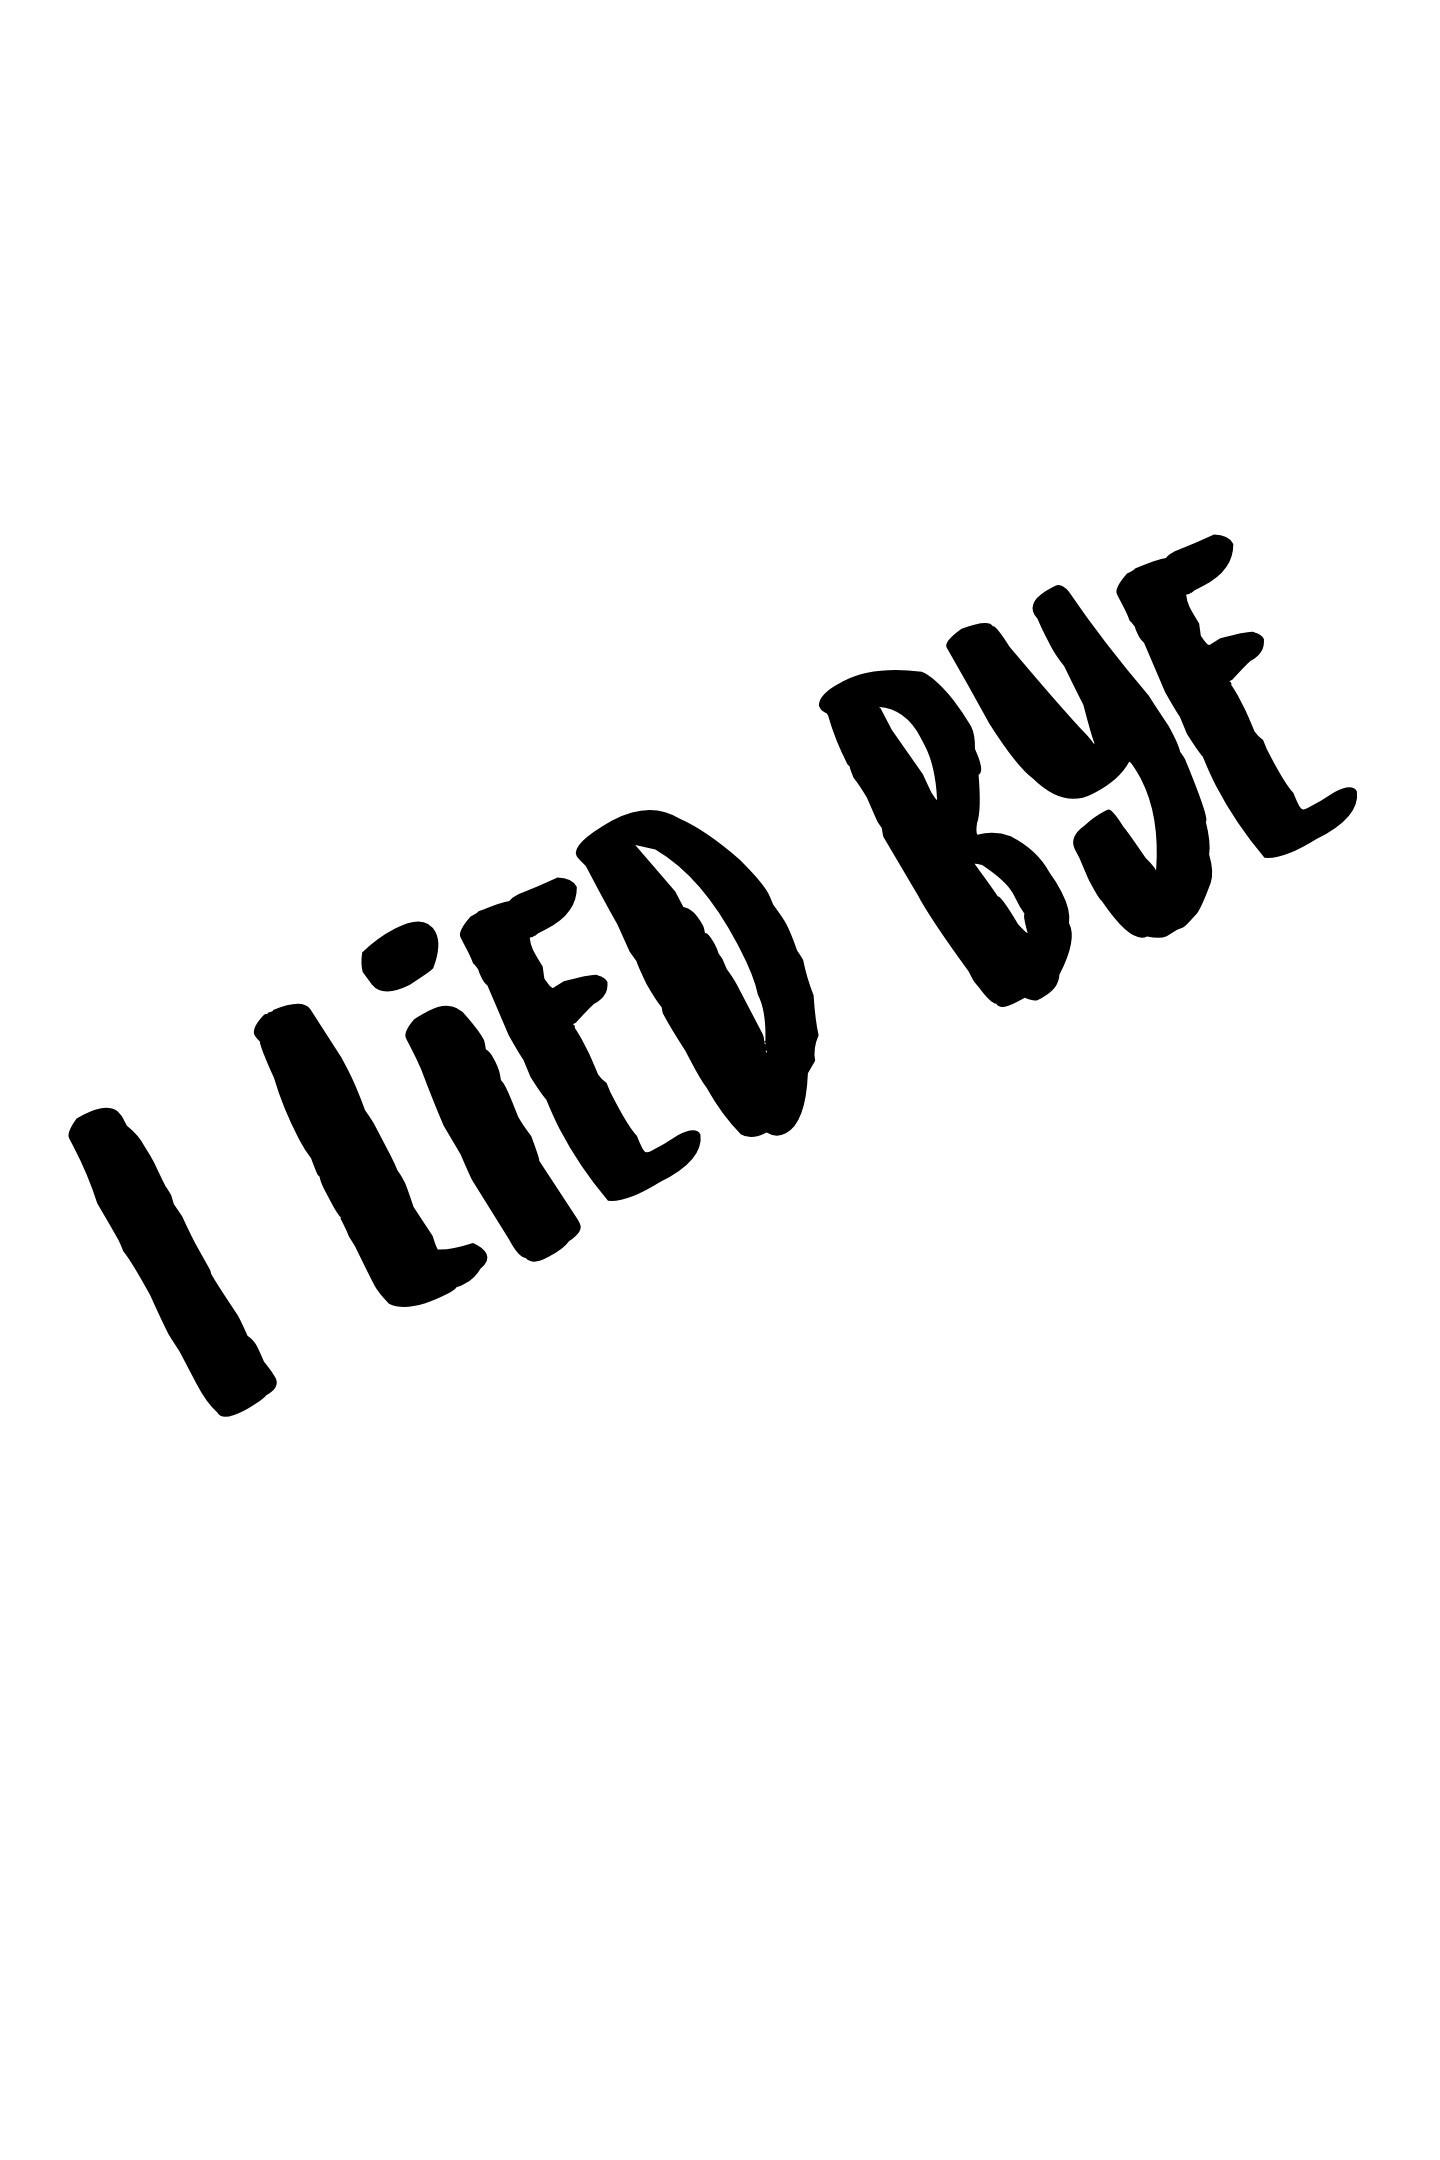 I lied bye